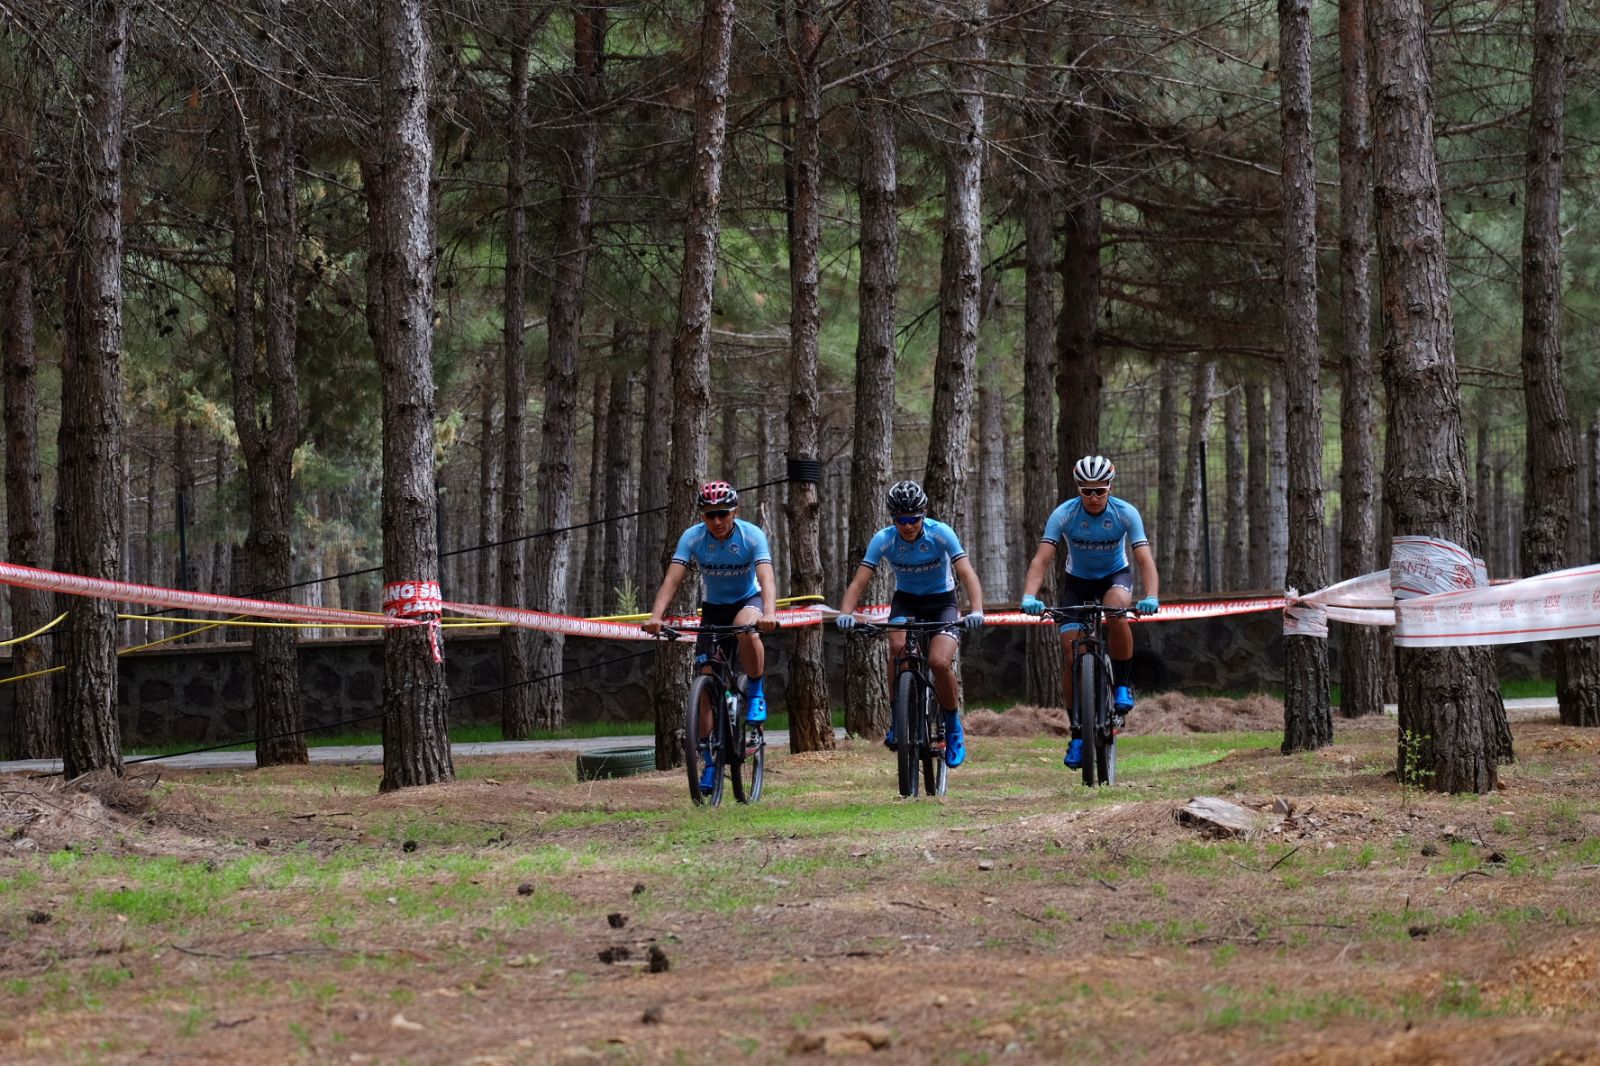 Bisiklet takımı Gaziantep’ten çifte zaferle dönüyor